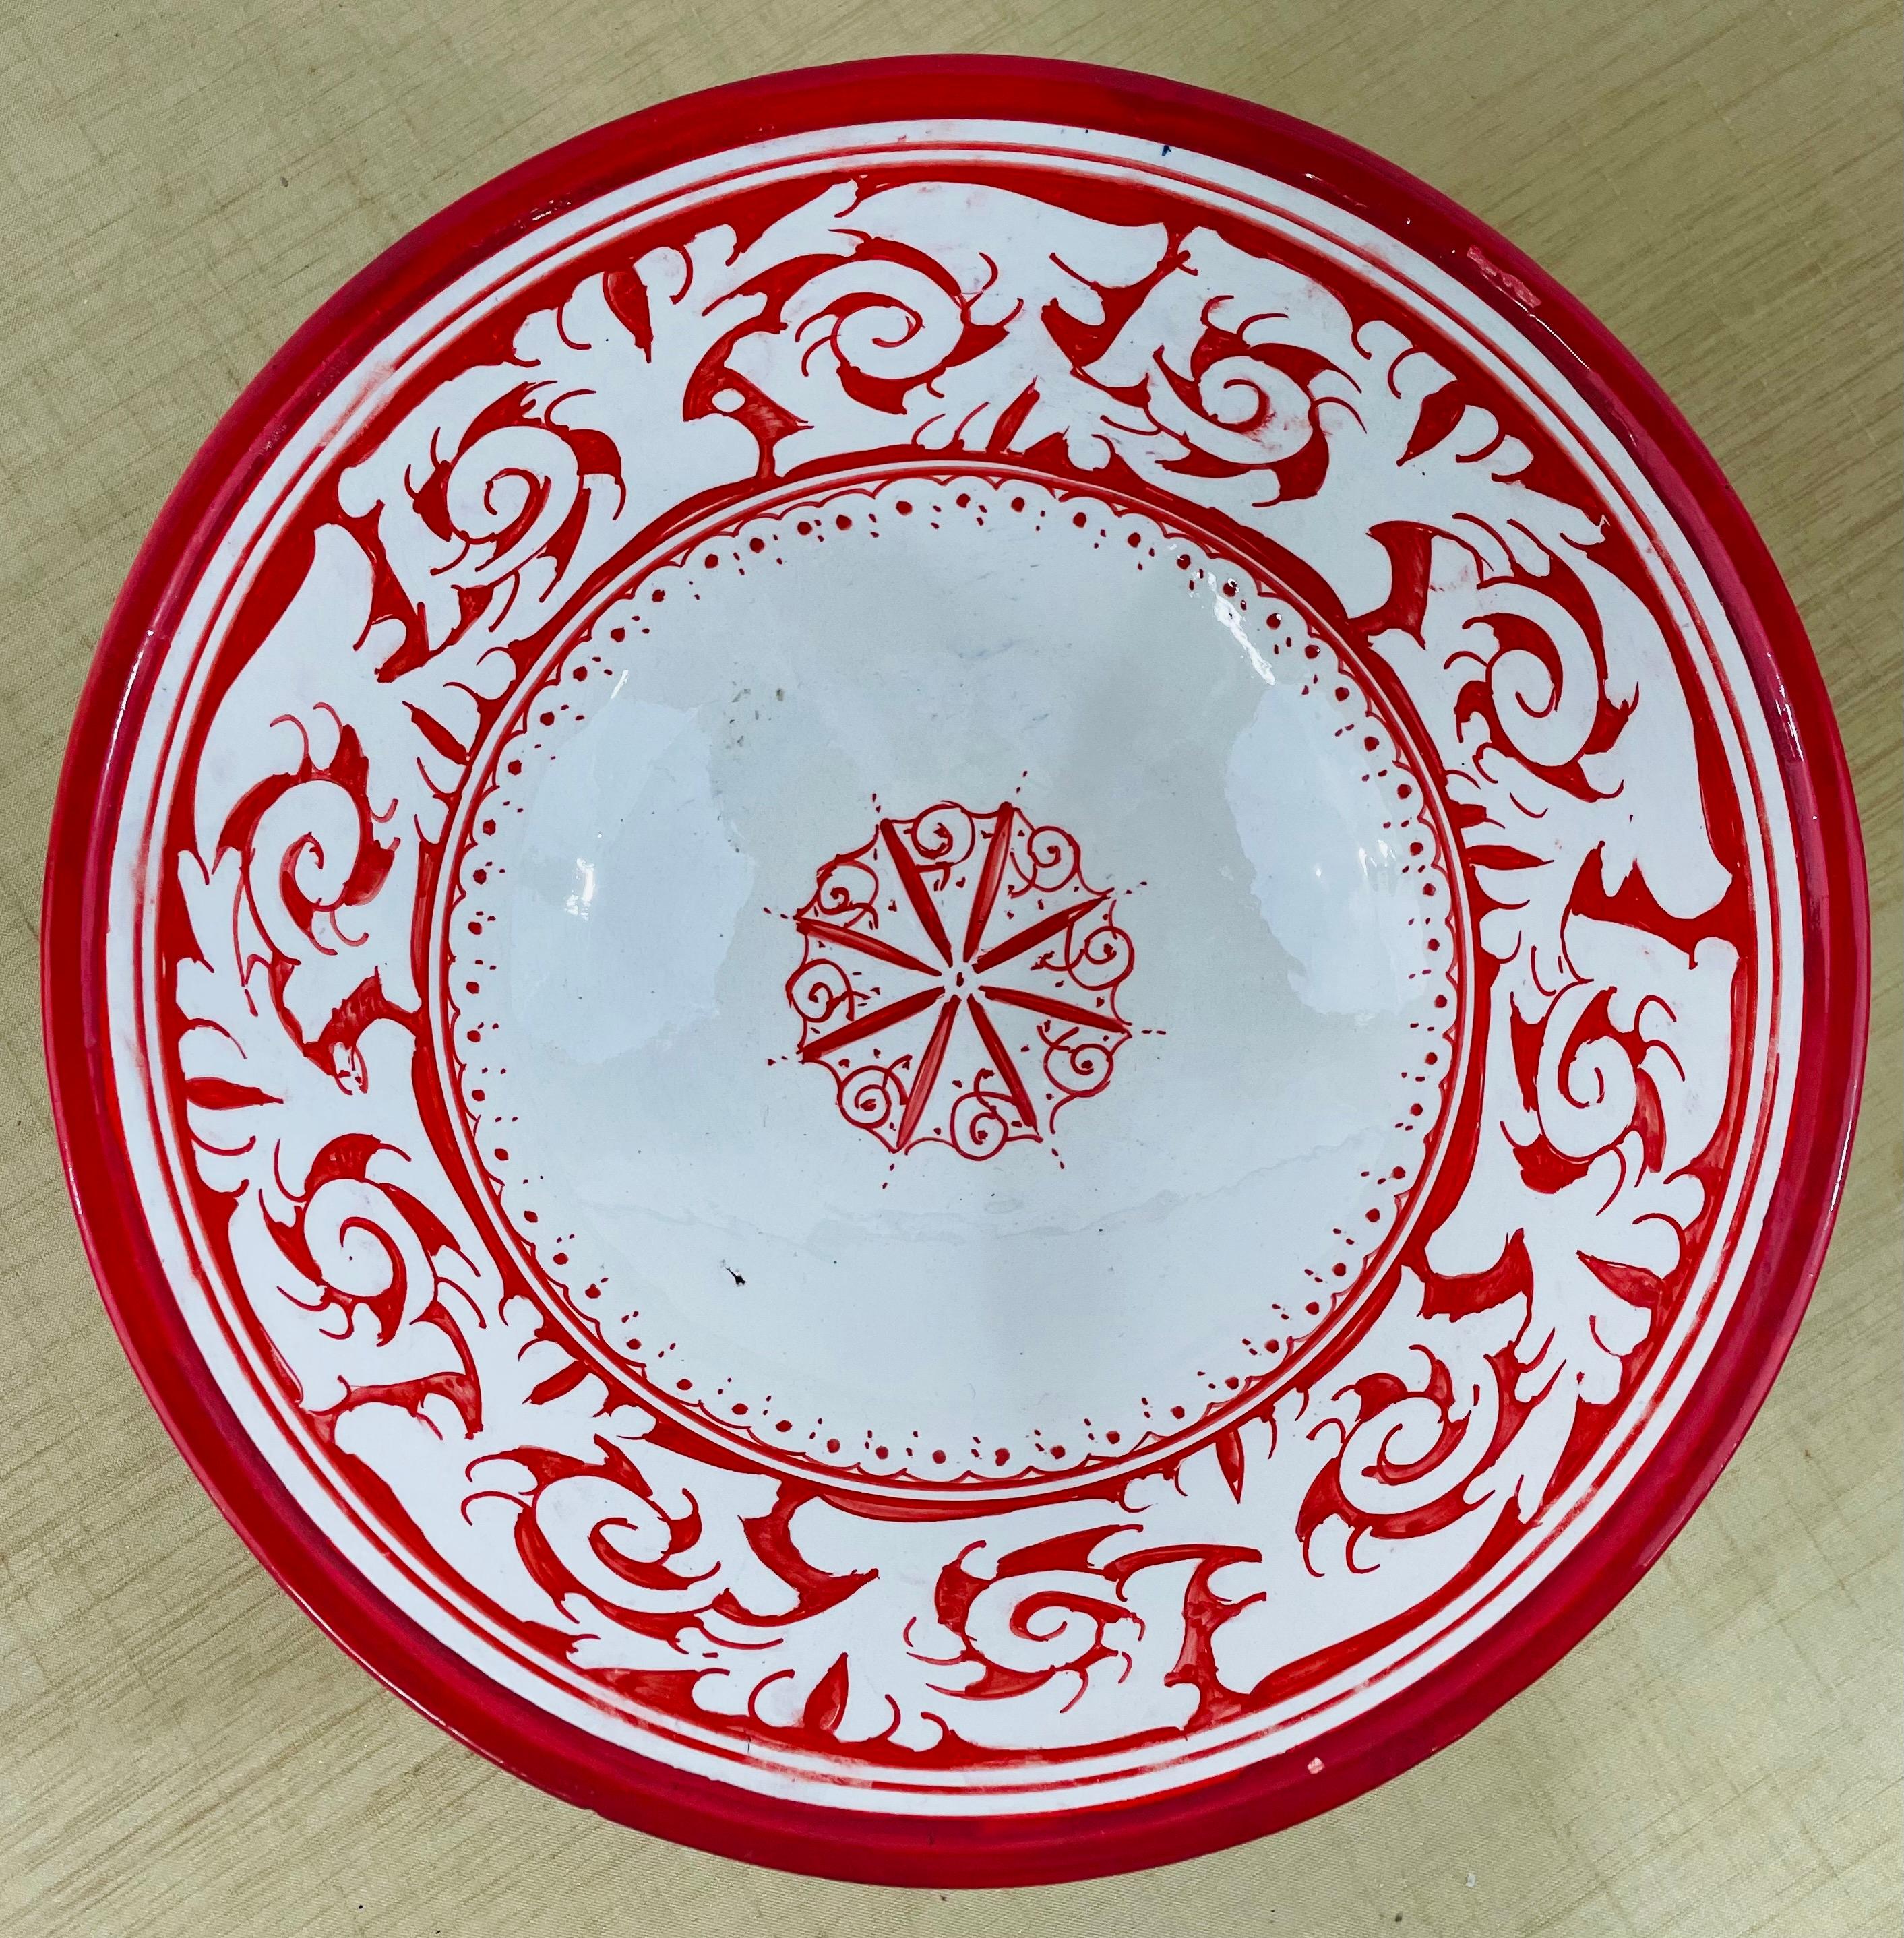 Un ensemble de 2 grands bols en poterie marocaine tribale vintage peints à la main. Un bol est finement peint d'un motif floral rouge sur blanc et le second bol présente des motifs floraux et géométriques complexes avec le brun comme couleur